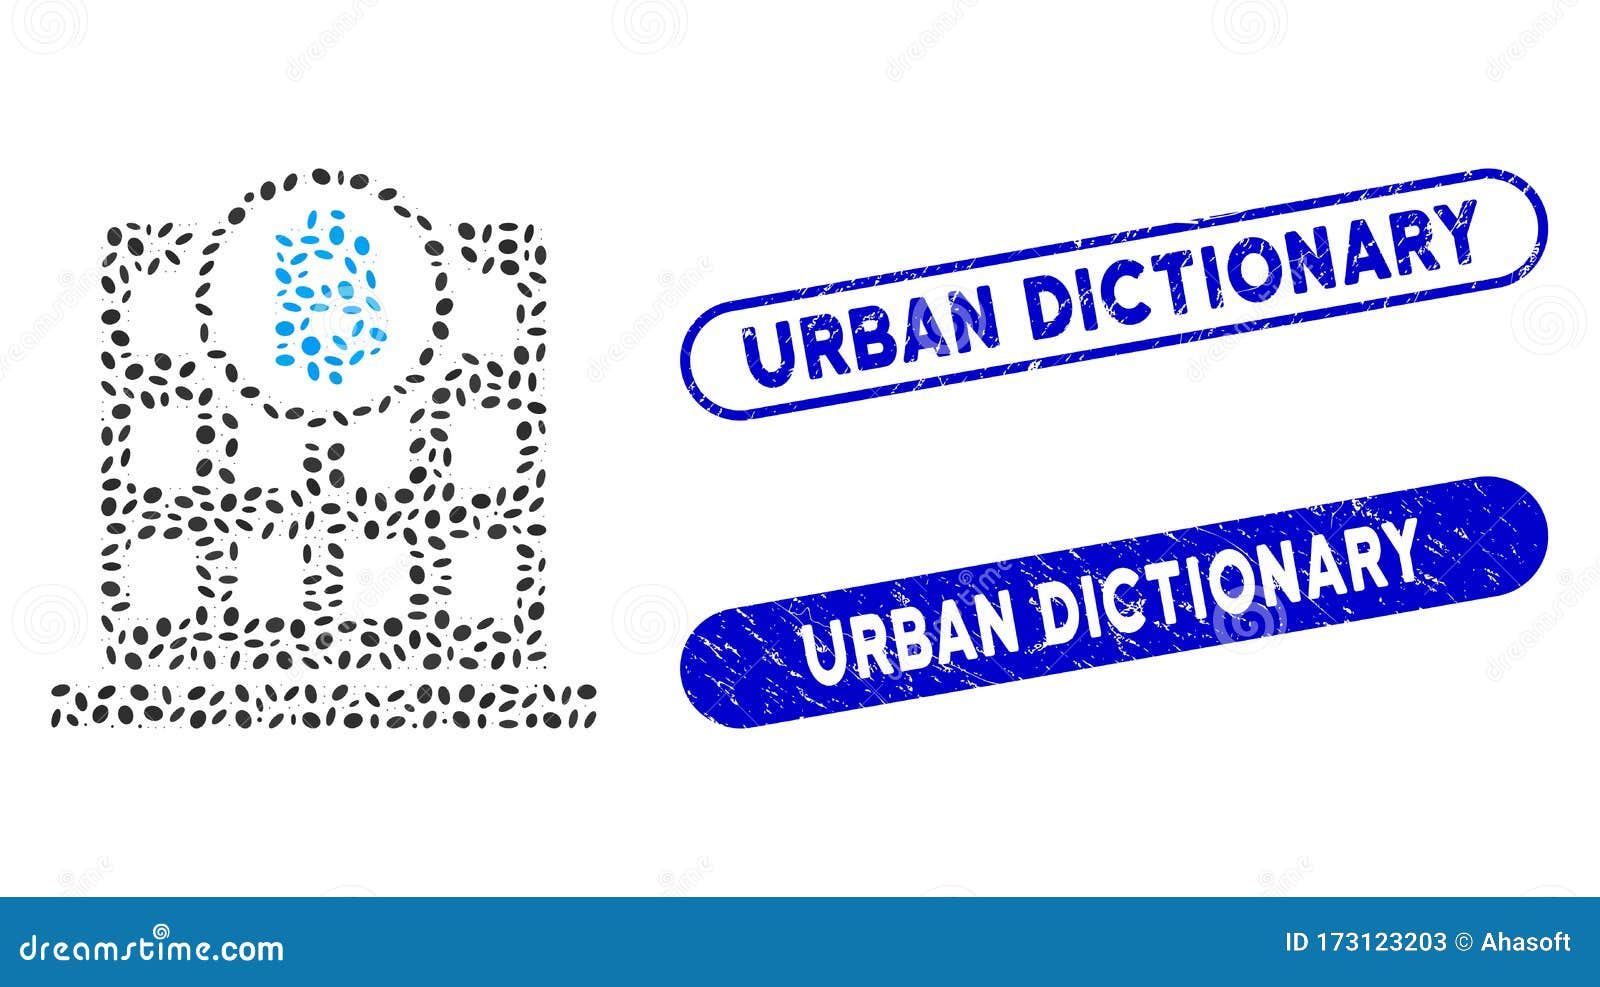 btc dicționar urban